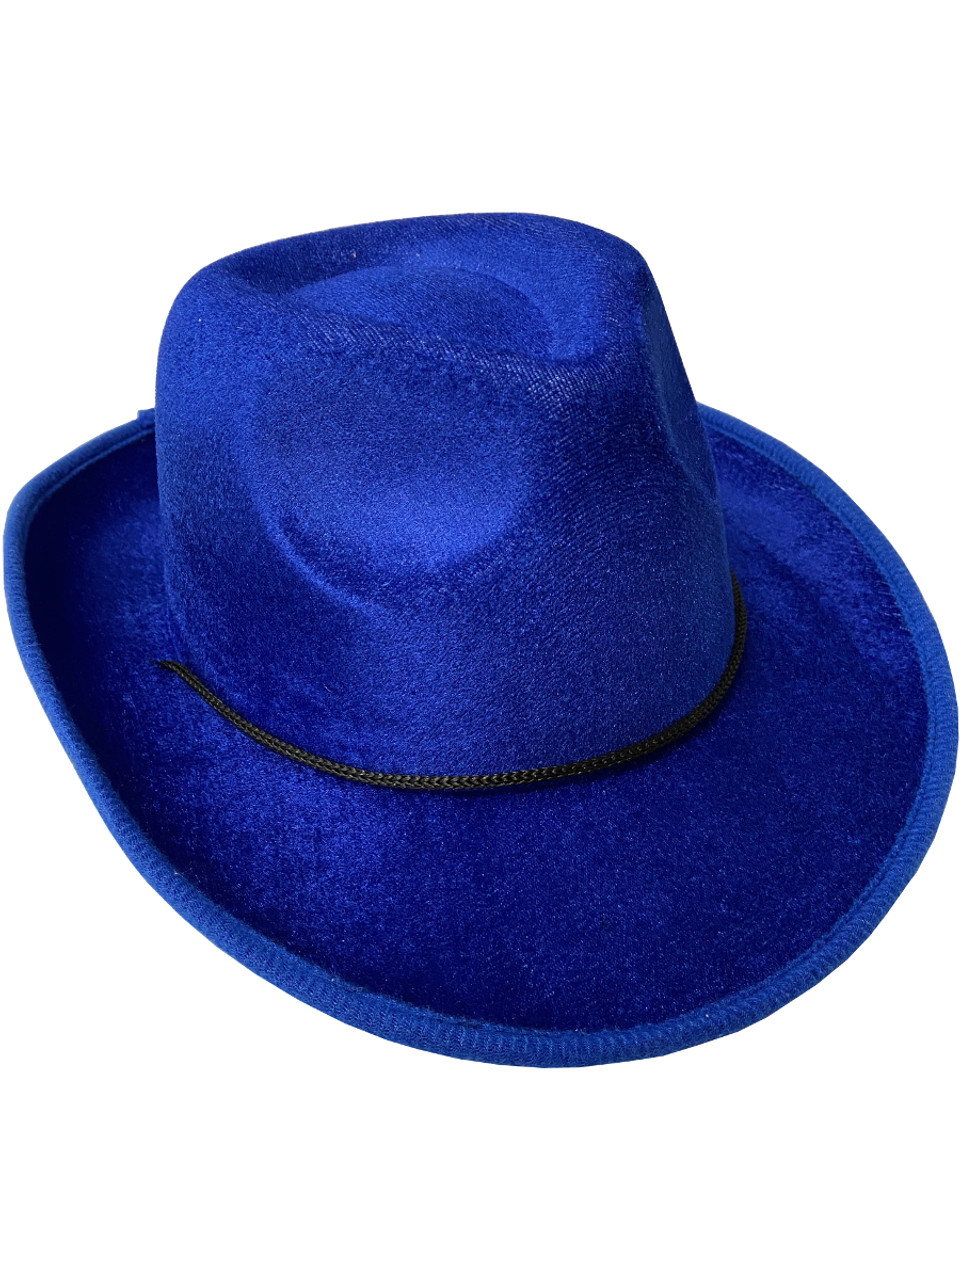 Adult's Blue Velvet Gangster Cowboy Hat